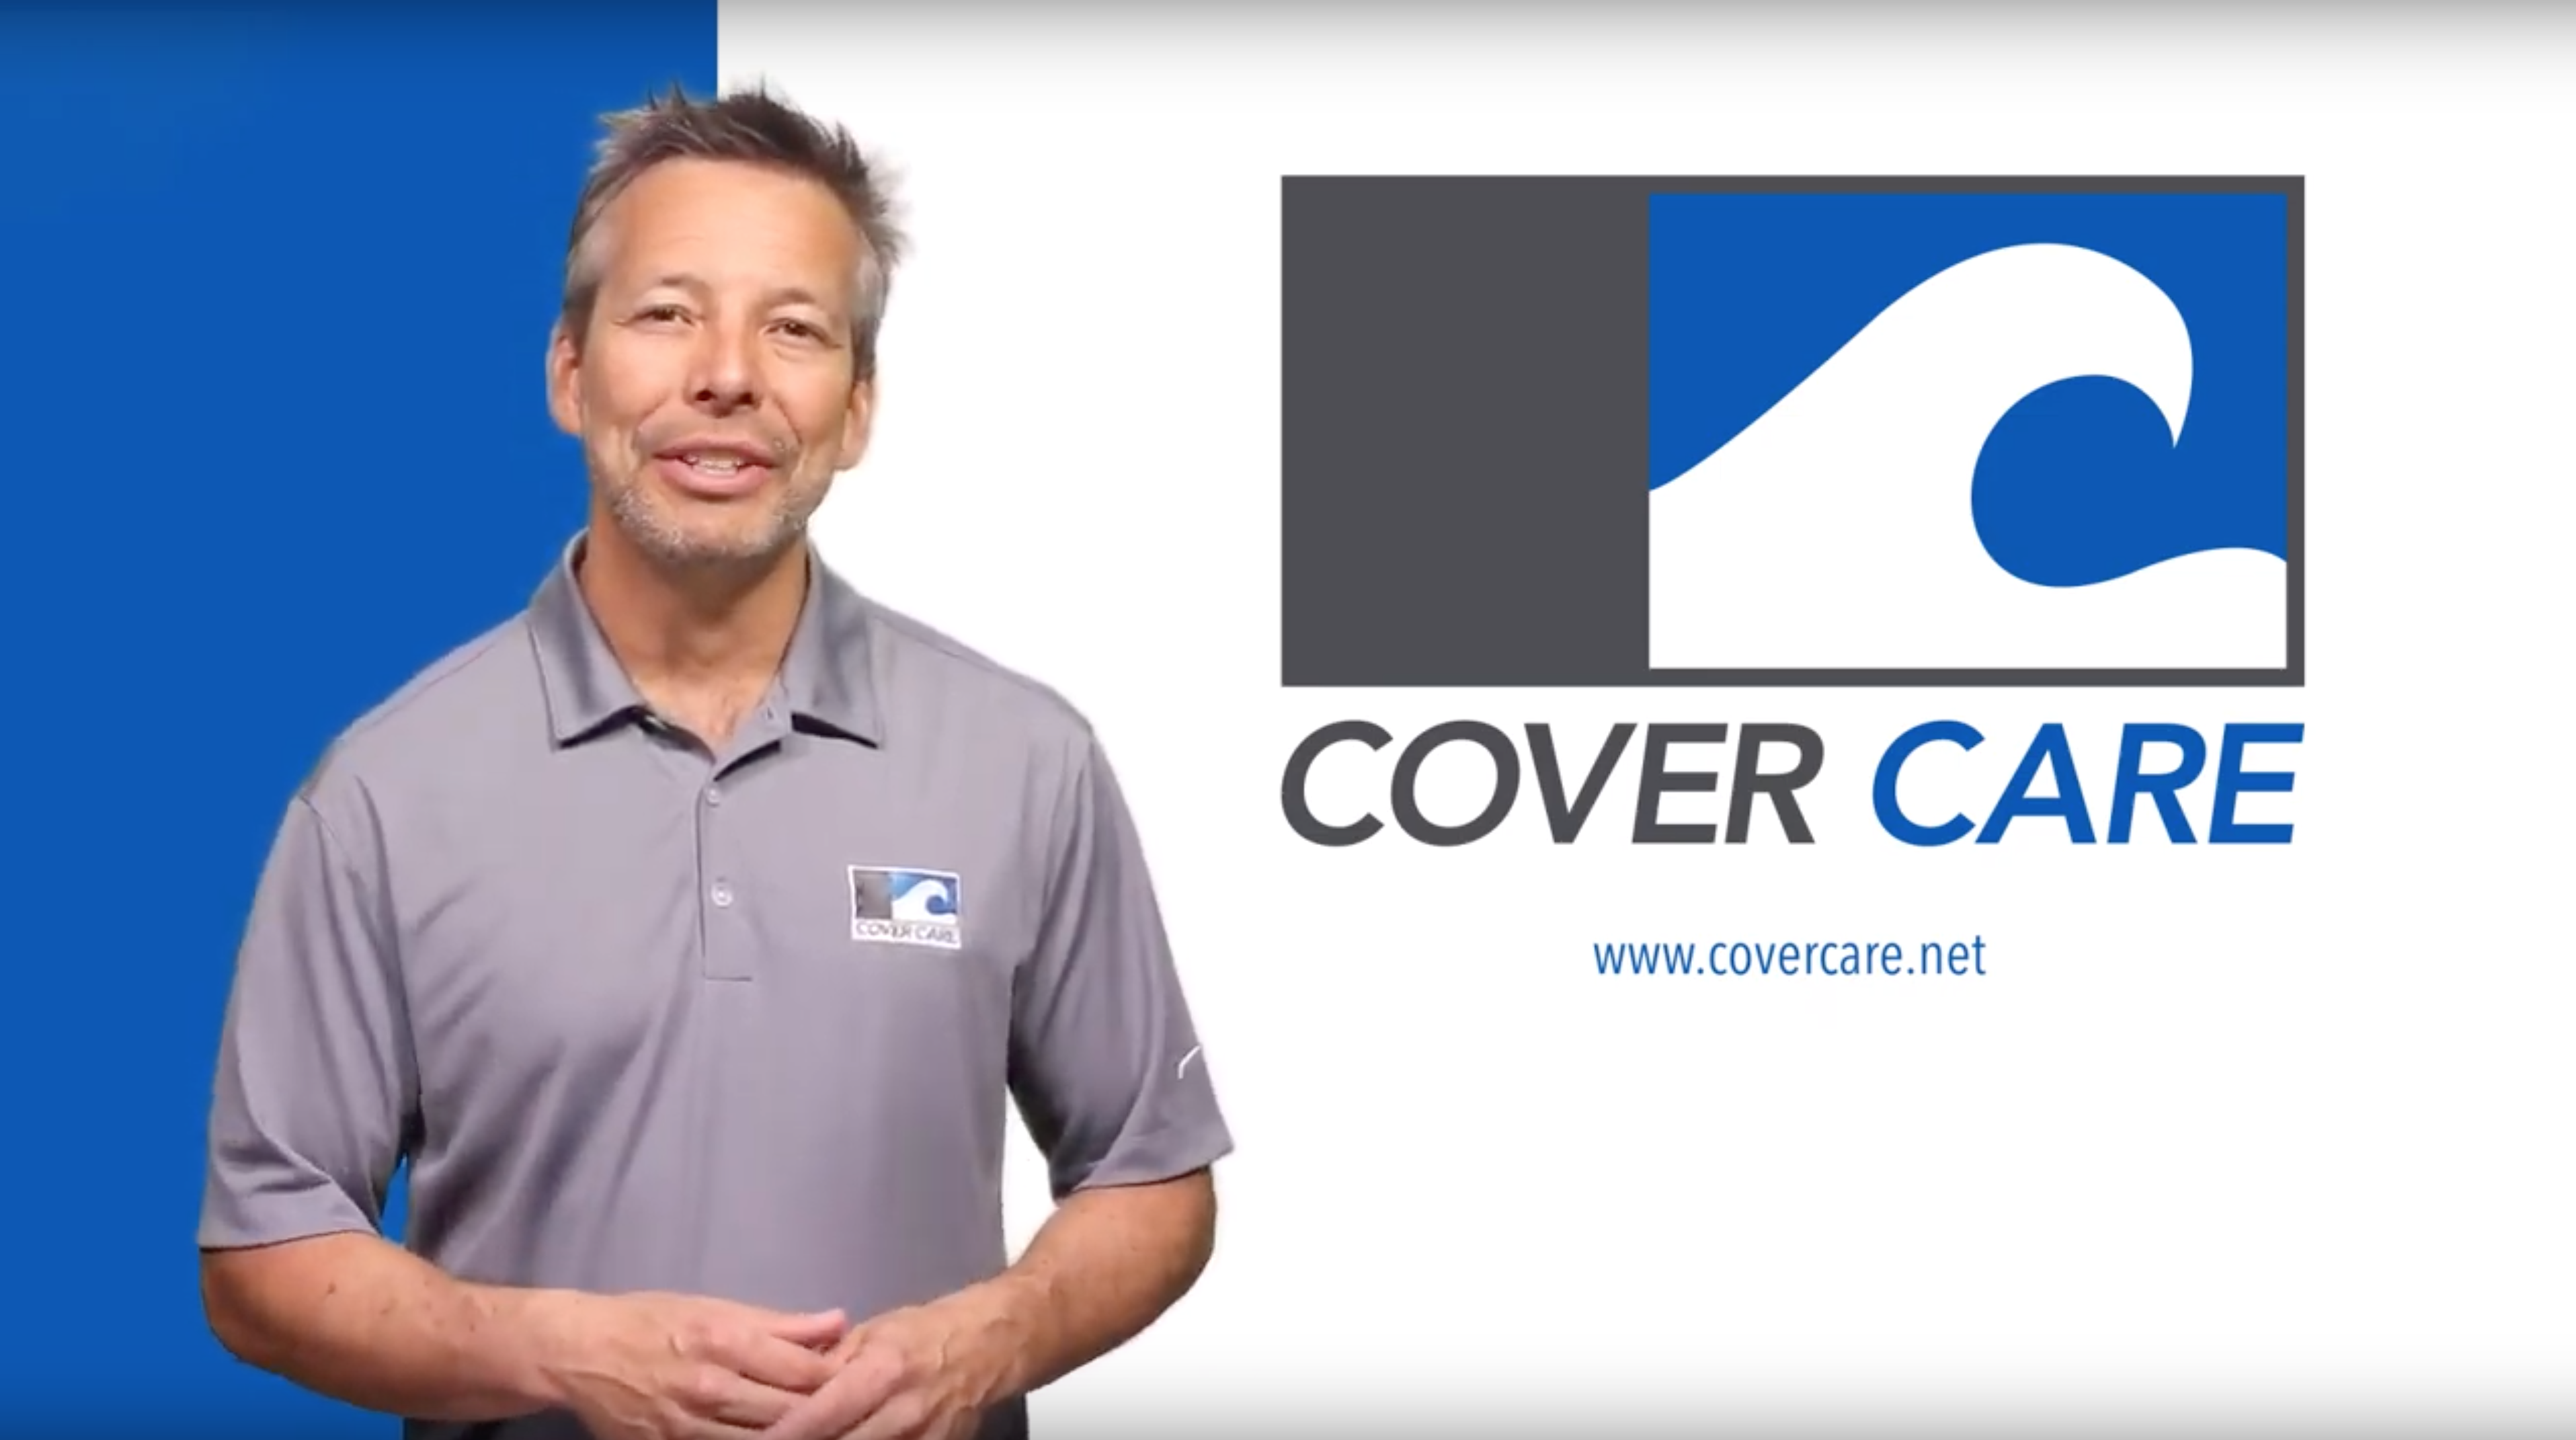 Cover Care representative